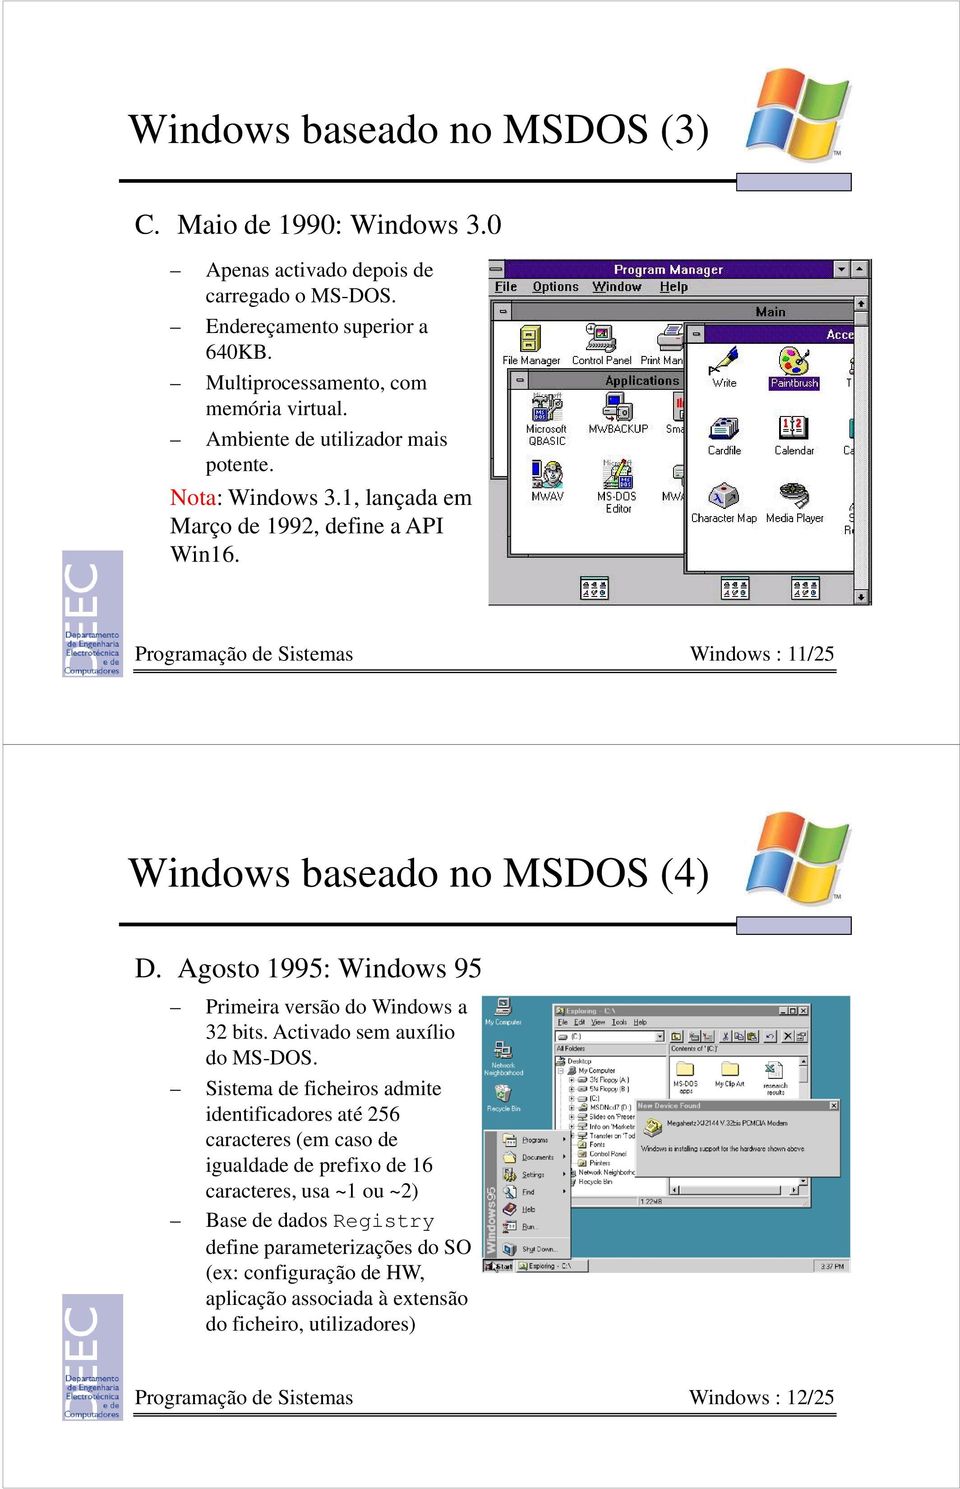 Agosto 1995: Windows 95 Primeira versão do Windows a 32 bits. Activado sem auxílio do MS-DOS.